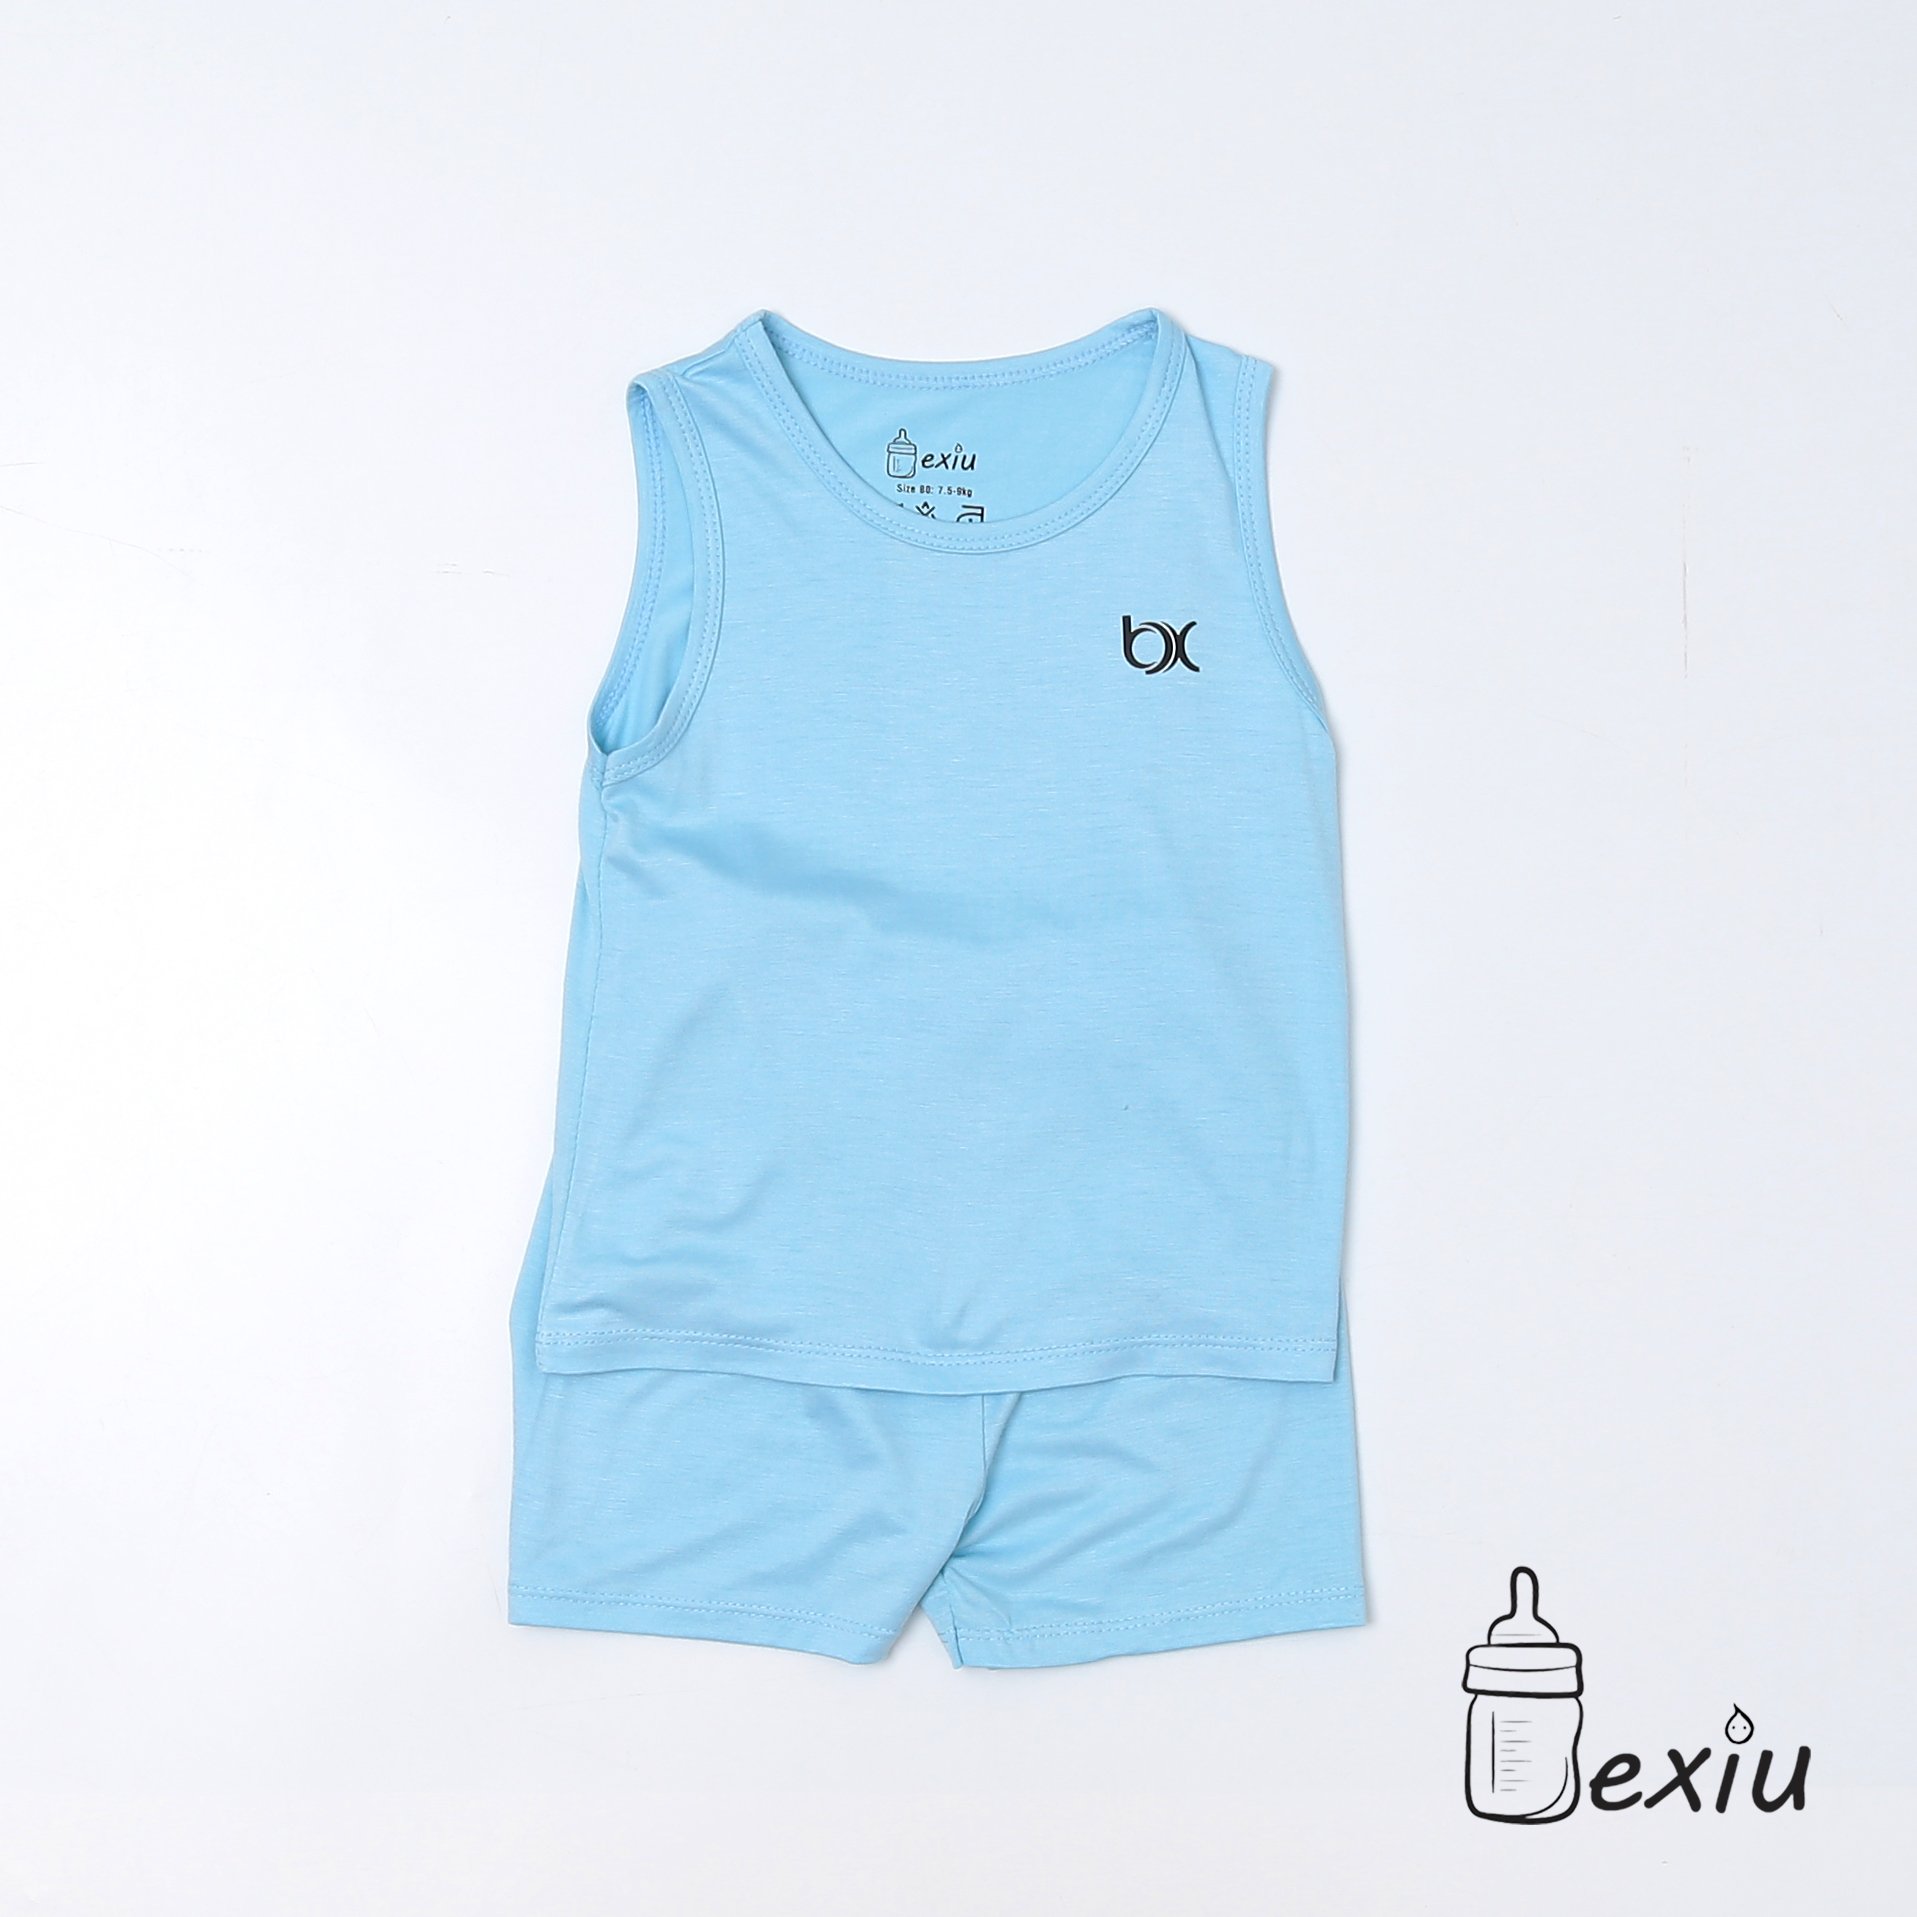 Hcmbộ ba lỗ màu bexiu bx - quần áo trẻ sơ sinh vải cotton lạnh mát mềm - ảnh sản phẩm 6